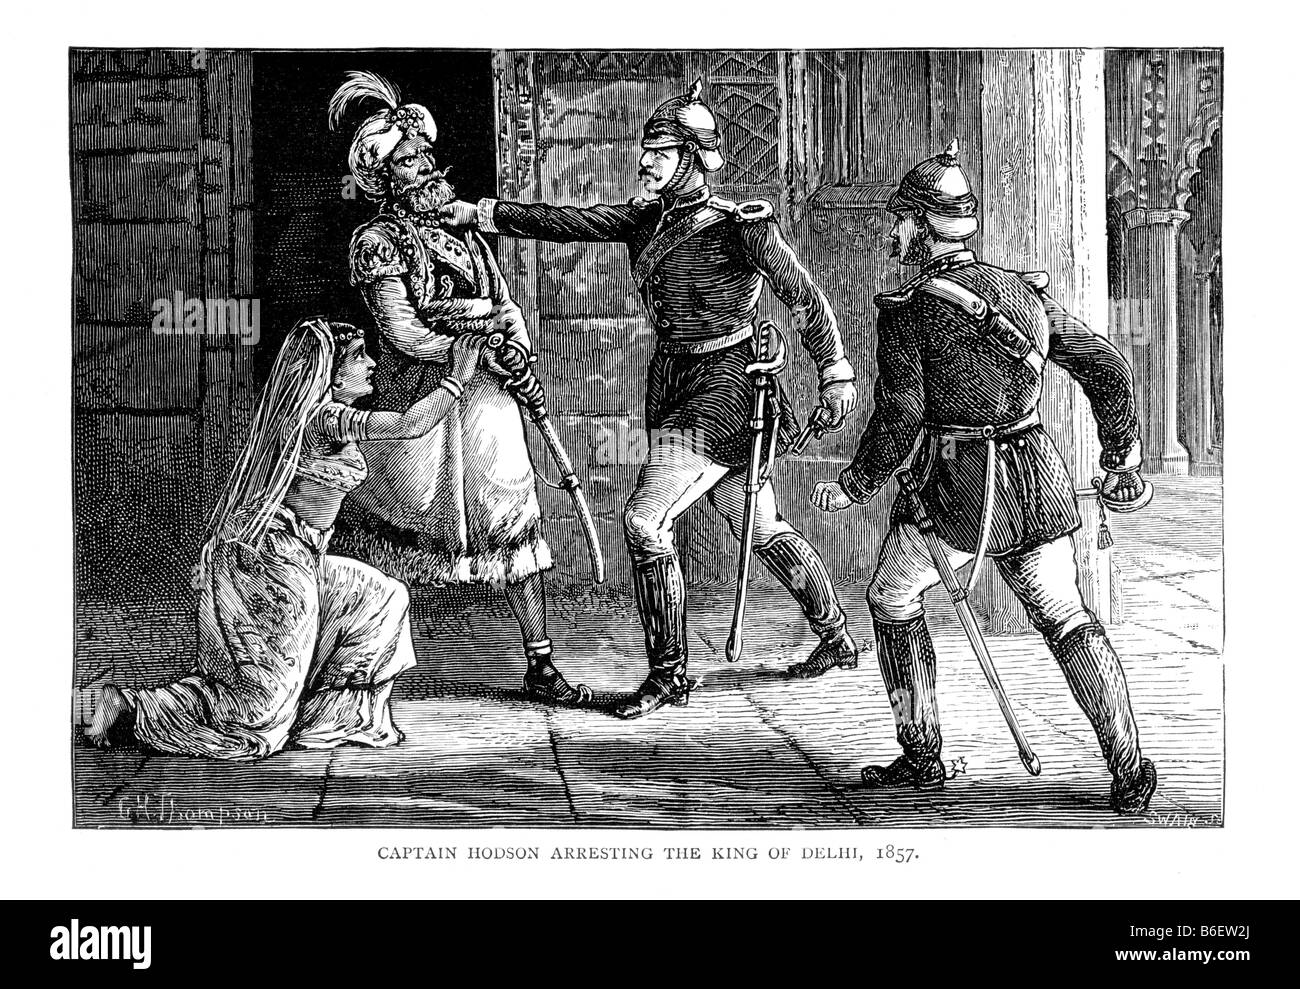 Le capitaine Hodson a arrêté le roi de Delhi Bahadur Shah II (ALIAS Zafar) 1857 19e siècle Illustration de G H Thompson b1833 d1884 Banque D'Images